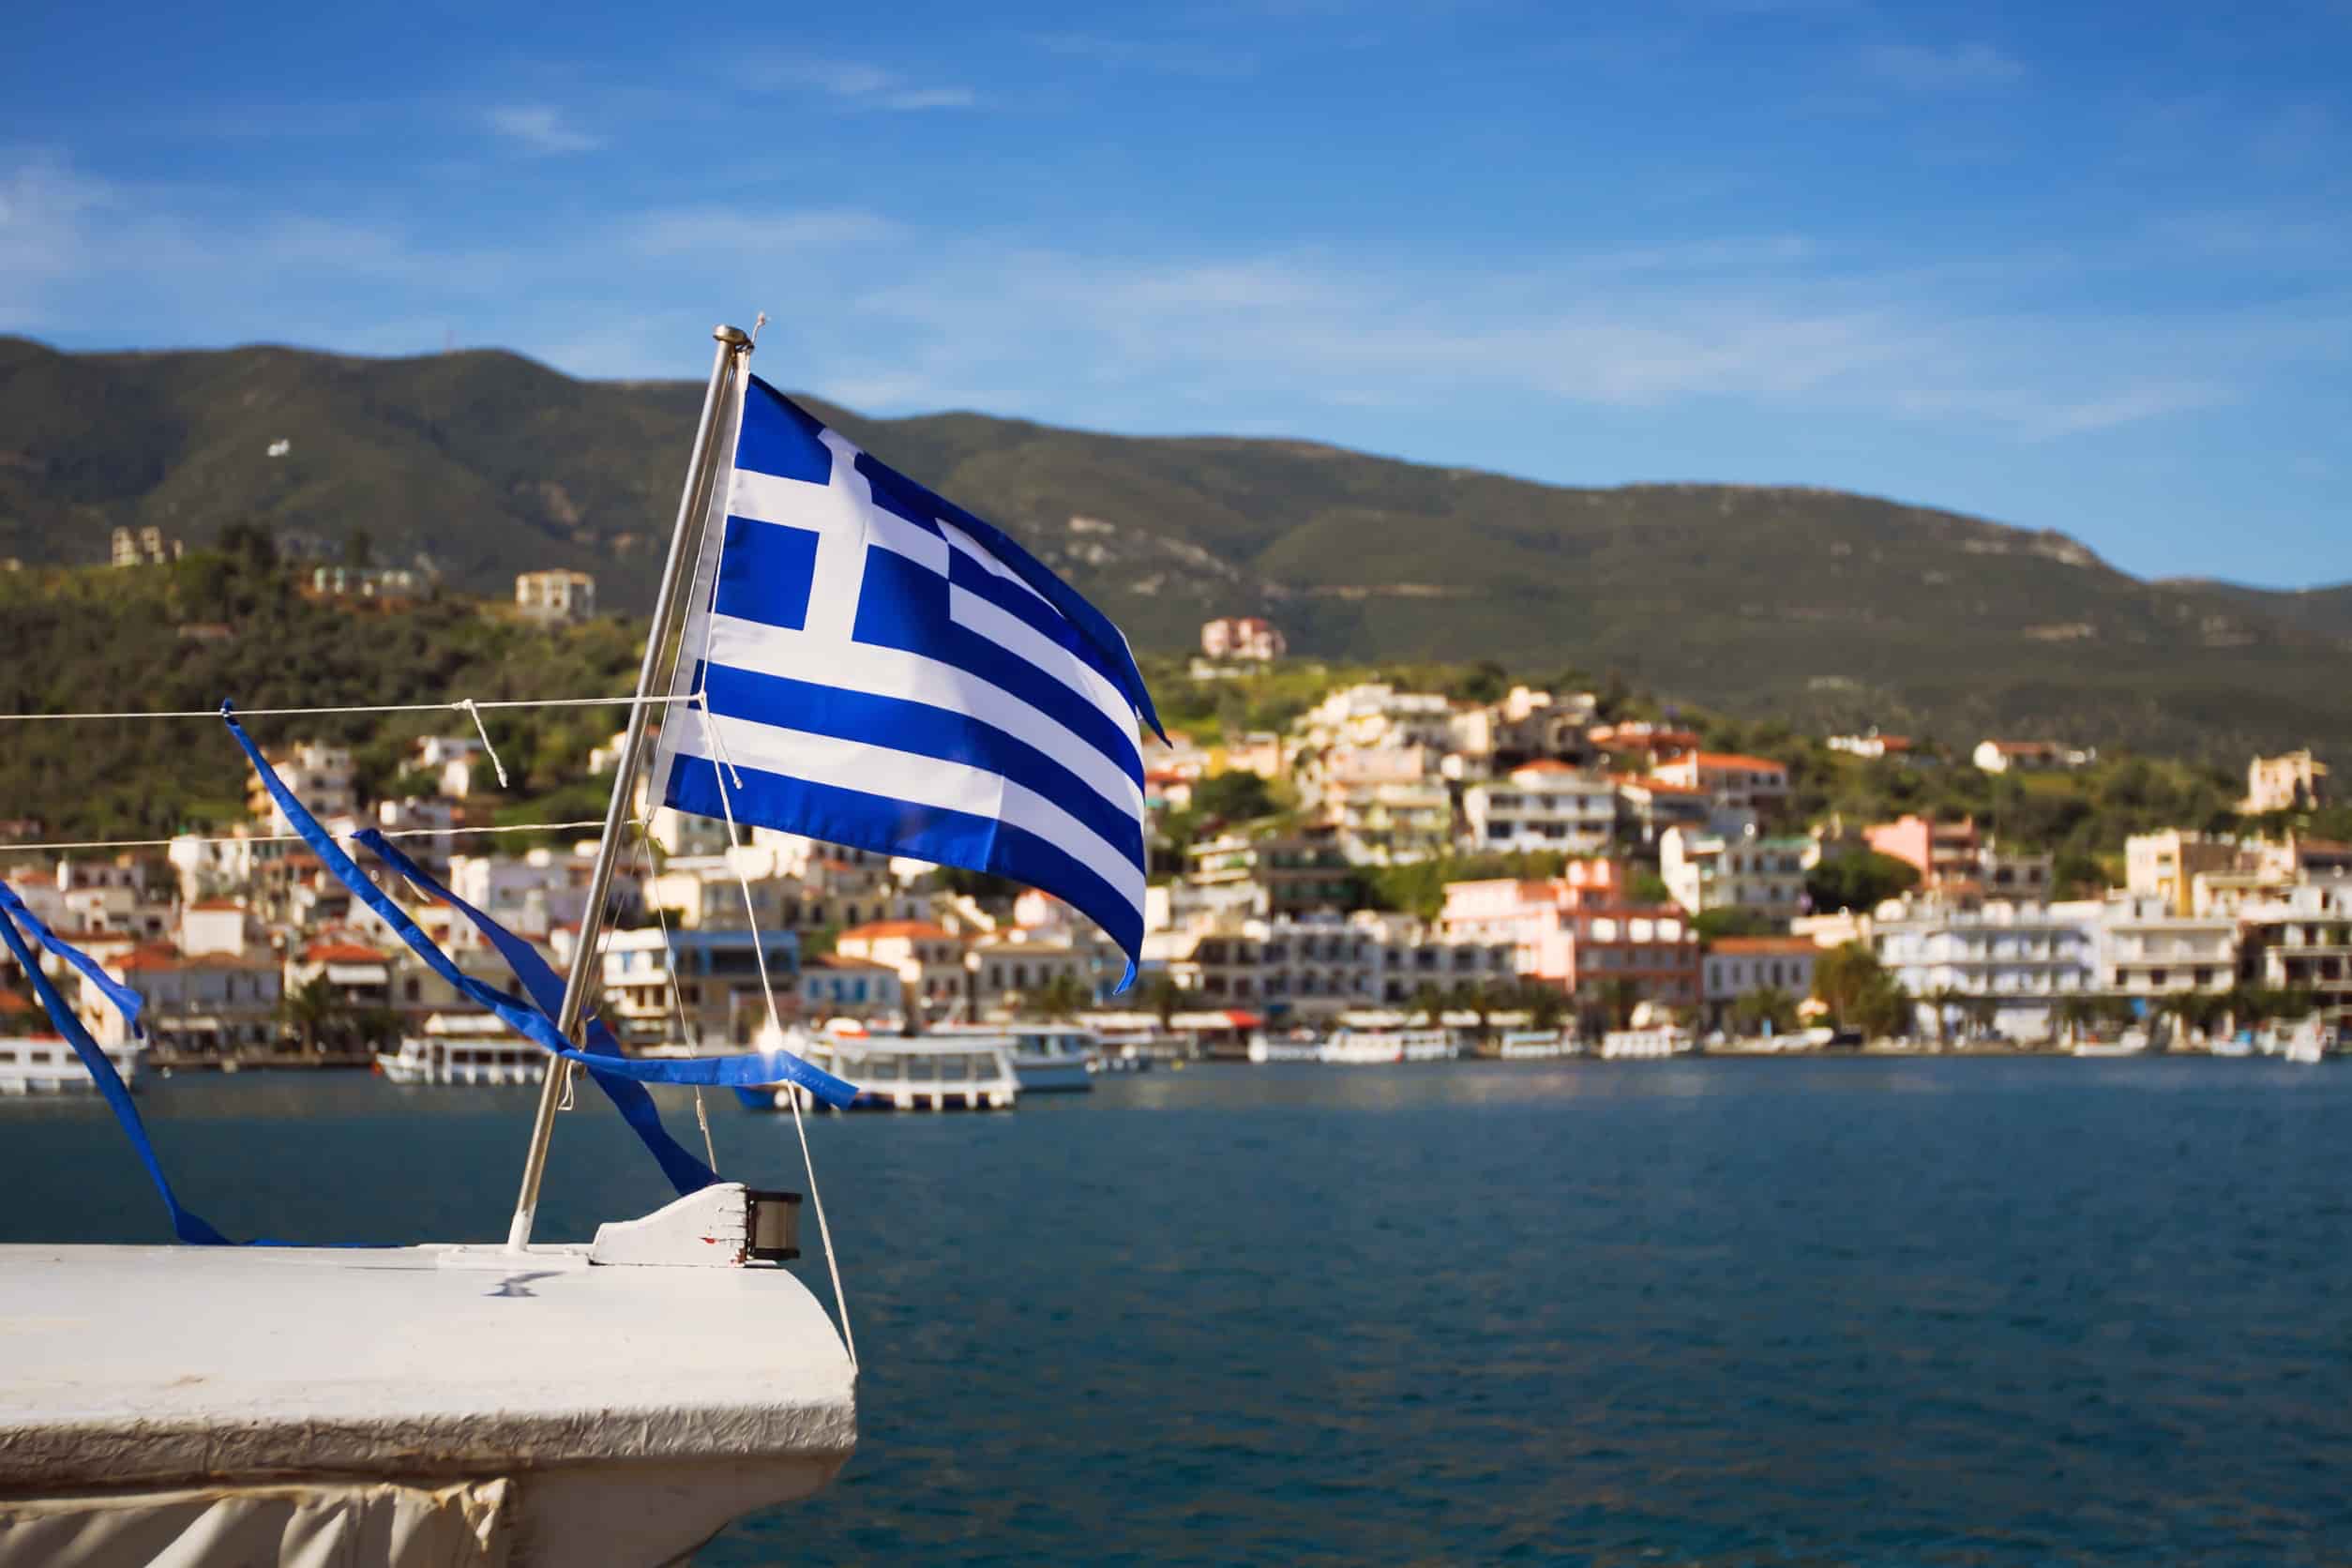 Griekse vlag op boot in Zee